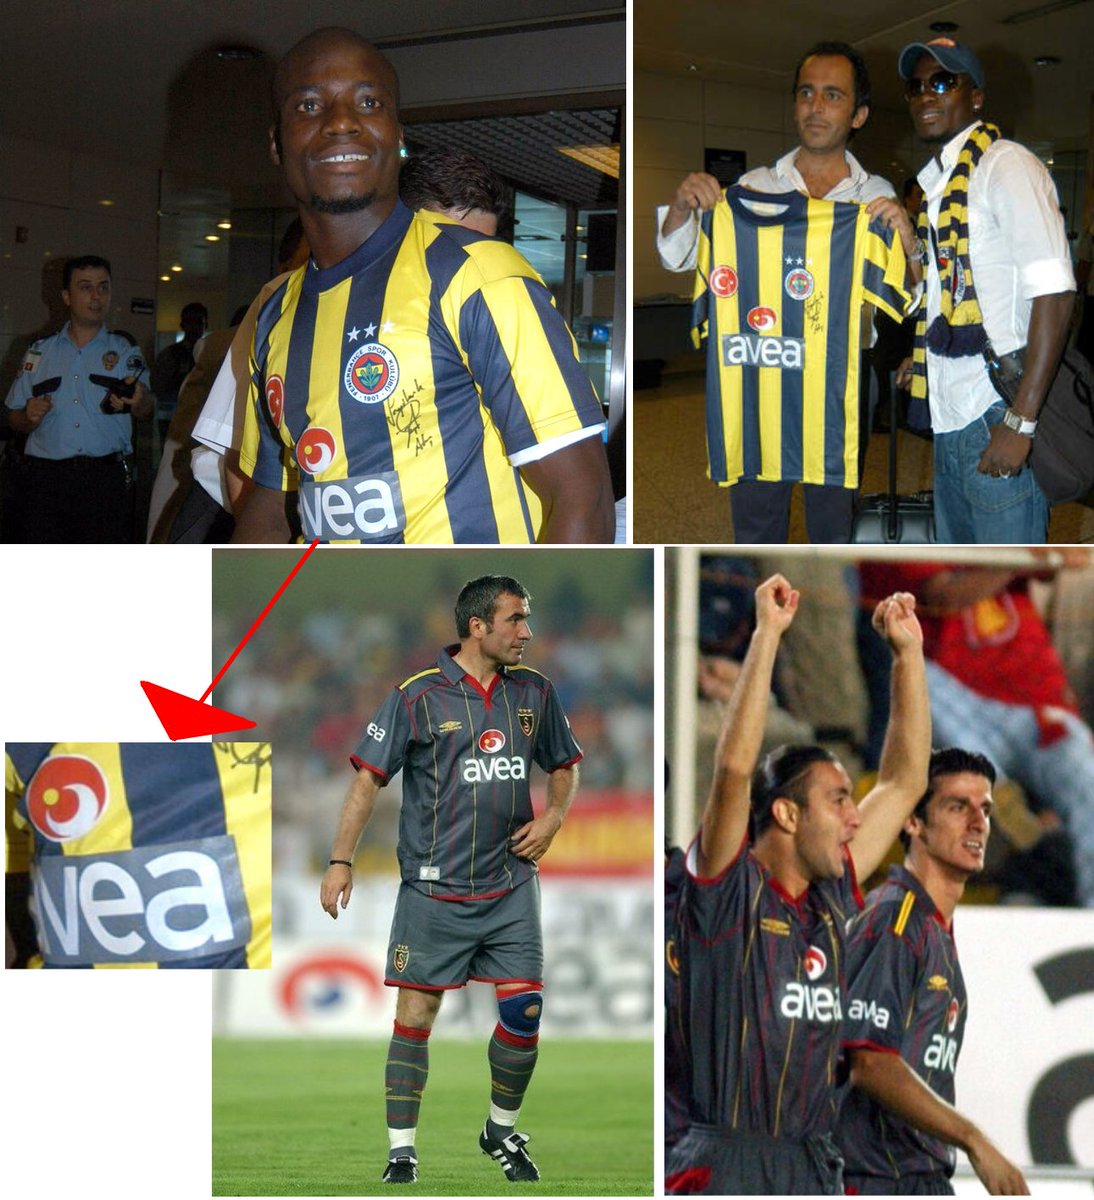 Appiah'ın imza töreninde giydiği Fenerbahçe formasının Avea reklamı, bir önceki sezonun Galatasaray formasından alınmıştır.